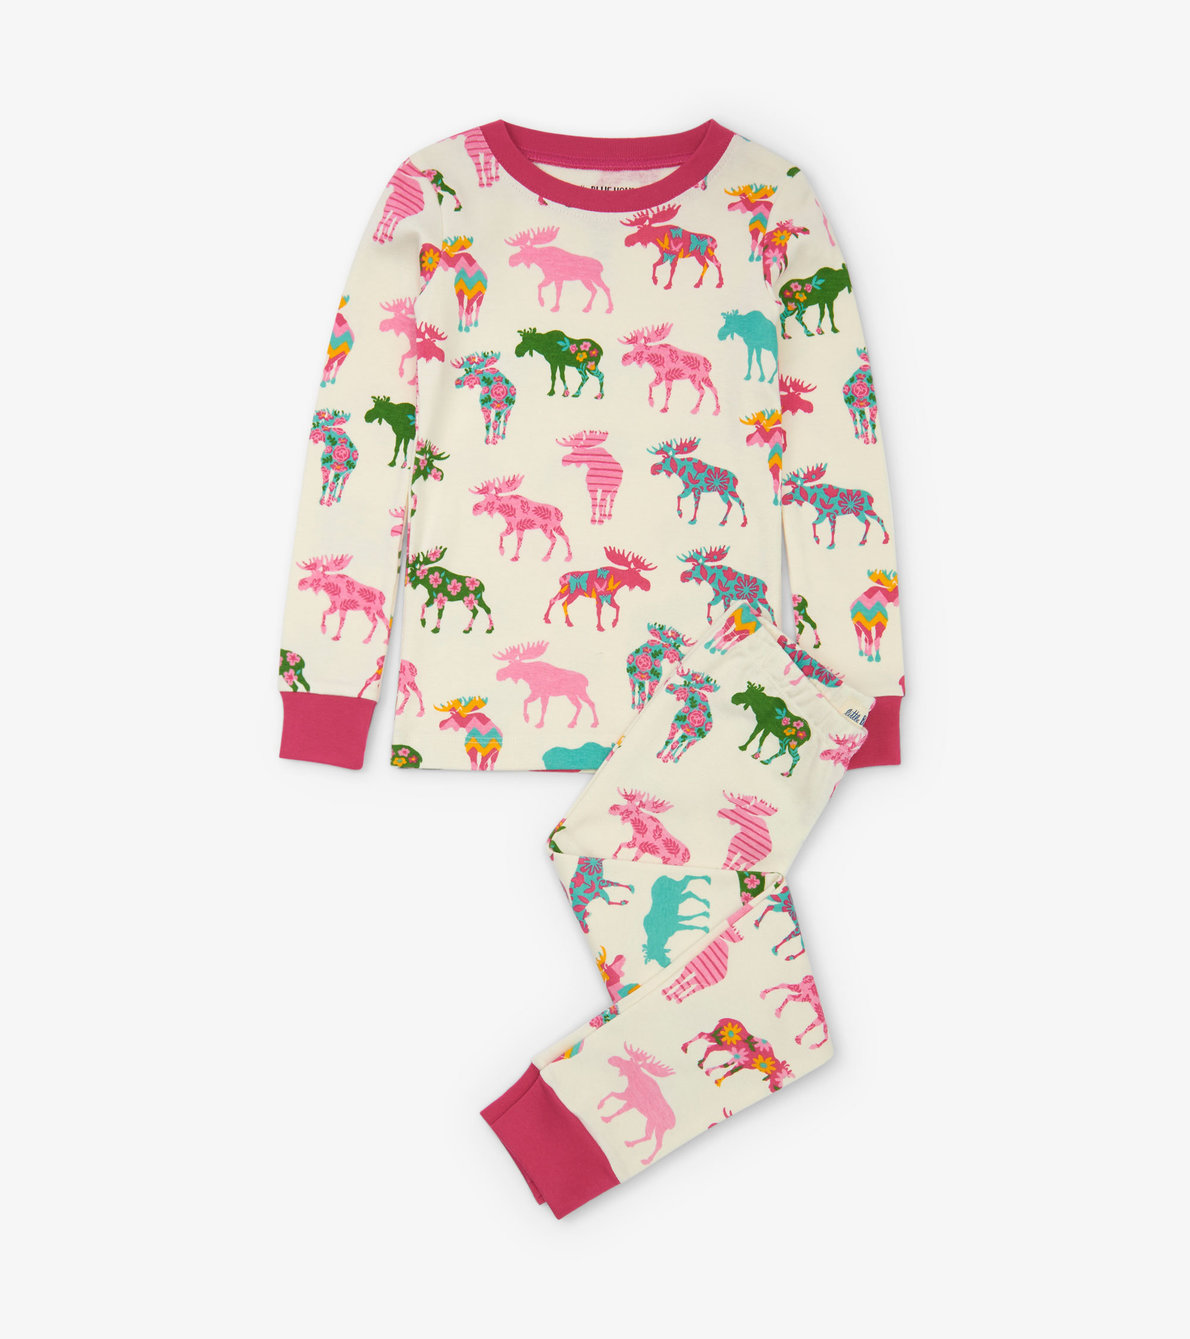 View larger image of Patterned Moose Kids Pajama Set